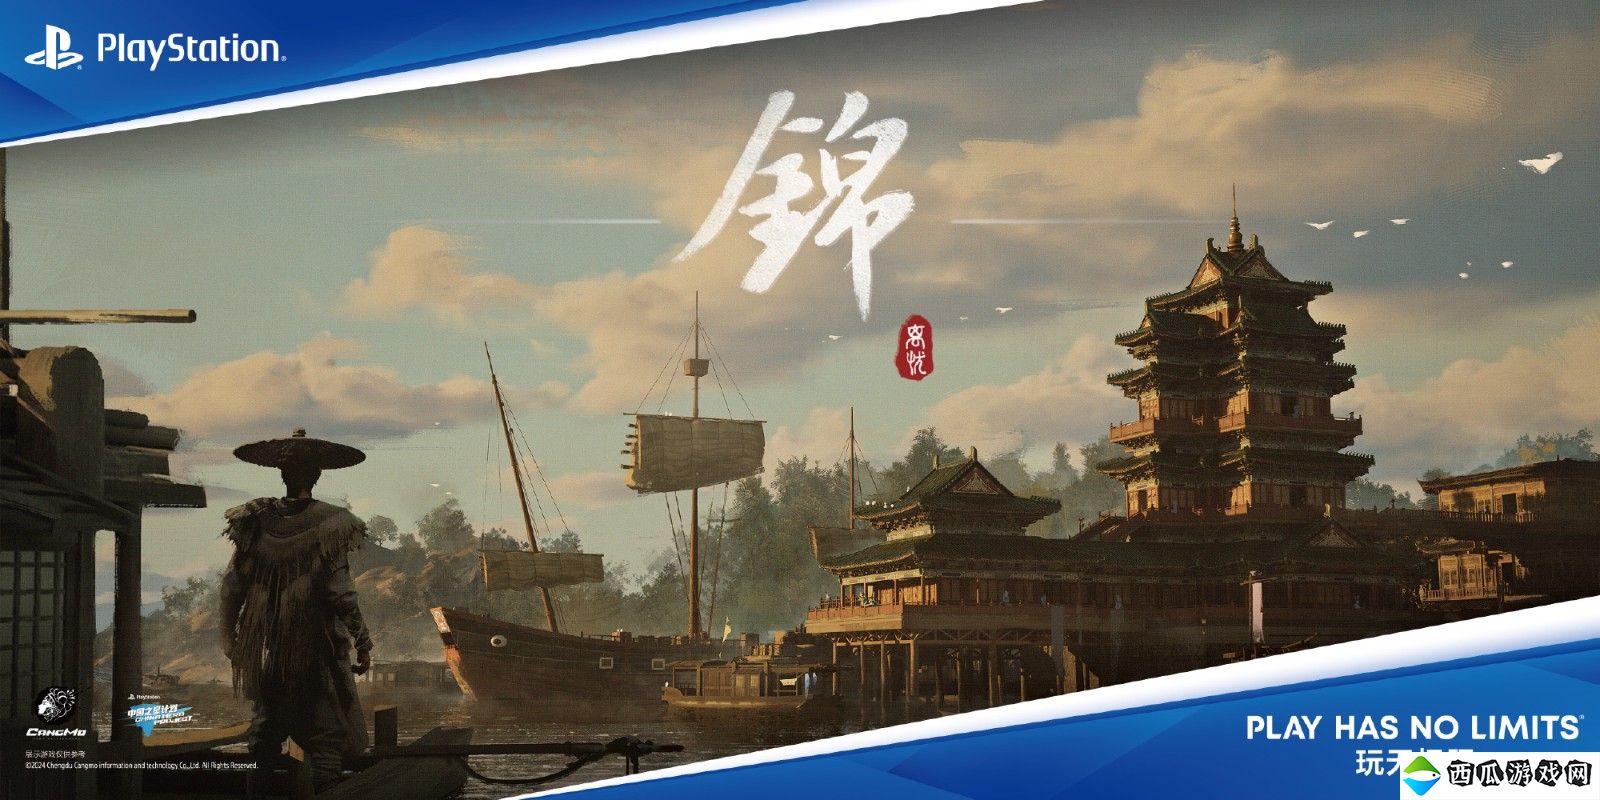 索尼中国之星计划第三期第三批游戏名单公布：《绝晓》等